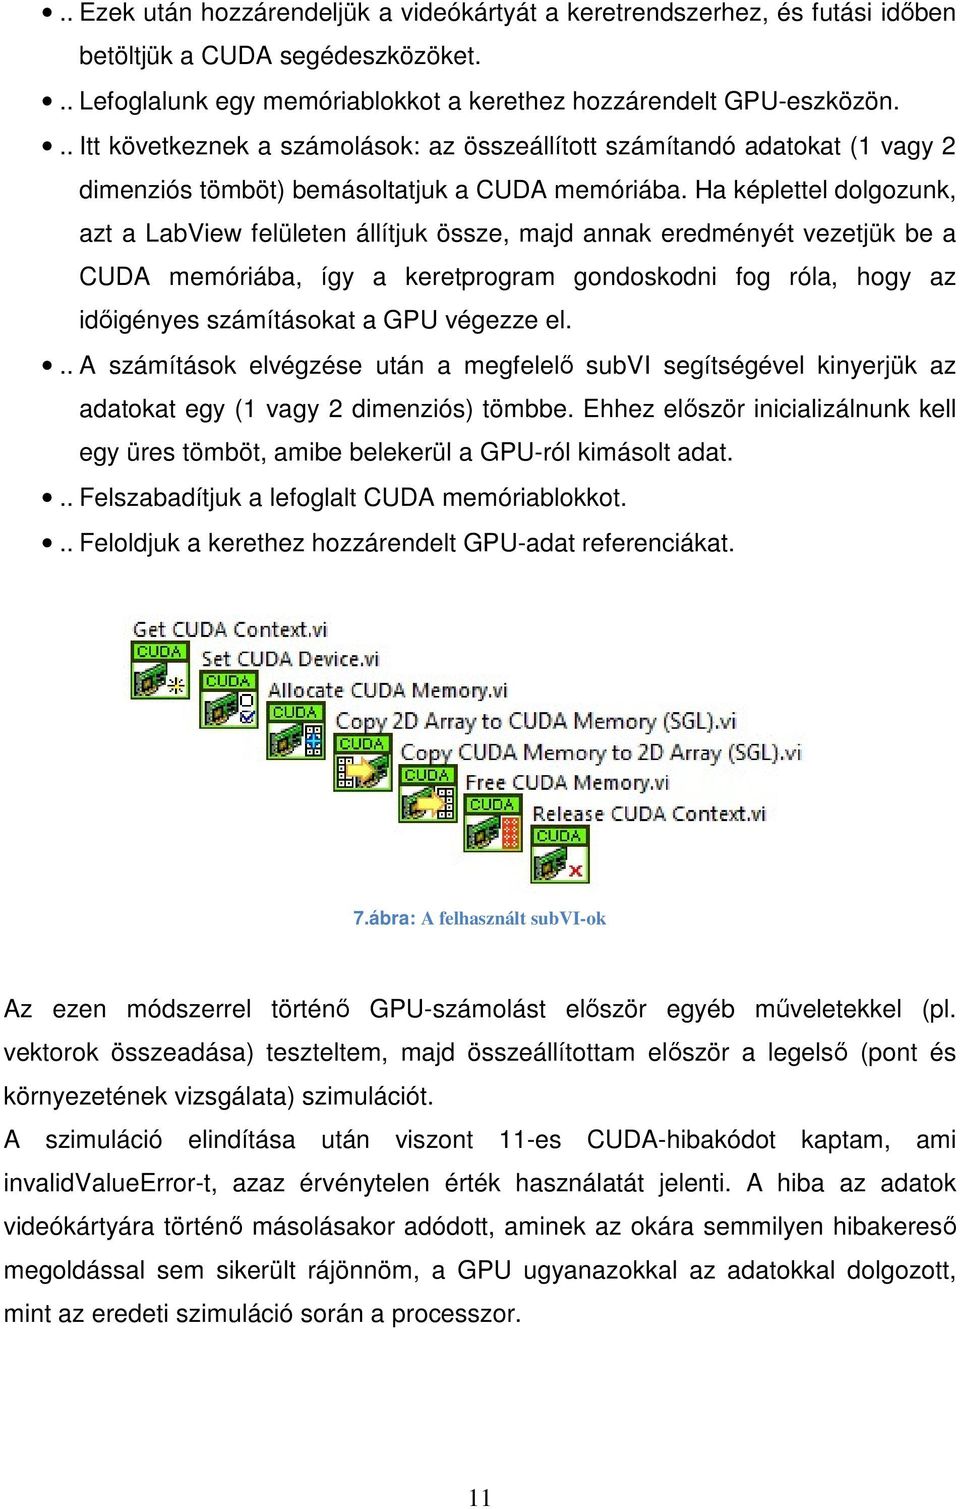 Ha képlettel dolgozunk, azt a LabView felületen állítjuk össze, majd annak eredményét vezetjük be a CUDA memóriába, így a keretprogram gondoskodni fog róla, hogy az időigényes számításokat a GPU